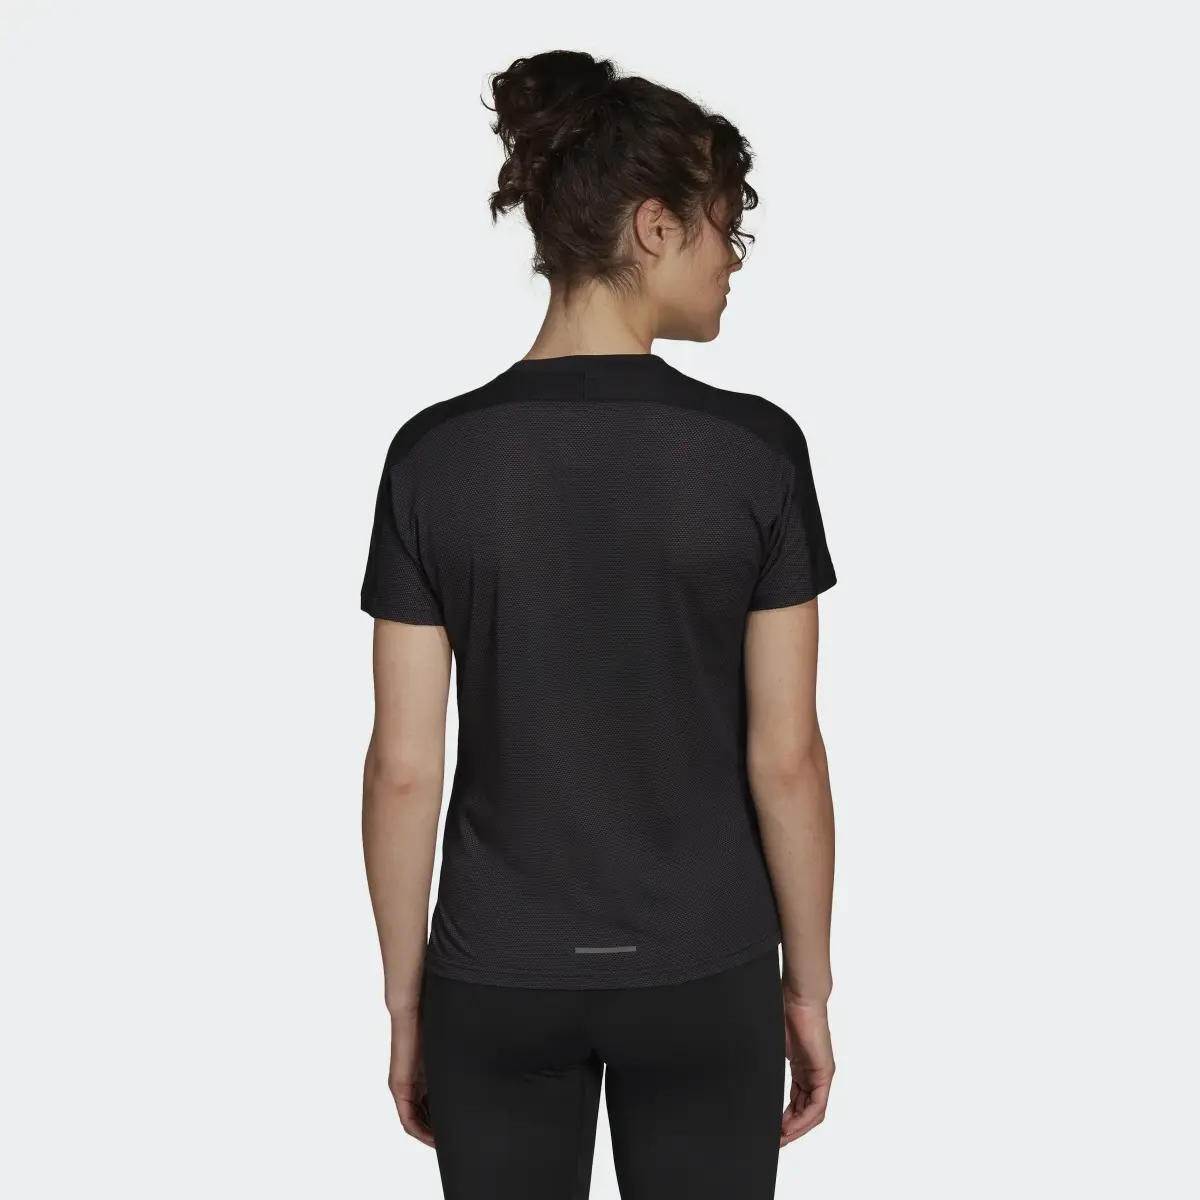 Adidas T-shirt de Lã TERREX Agravic Pro. 3